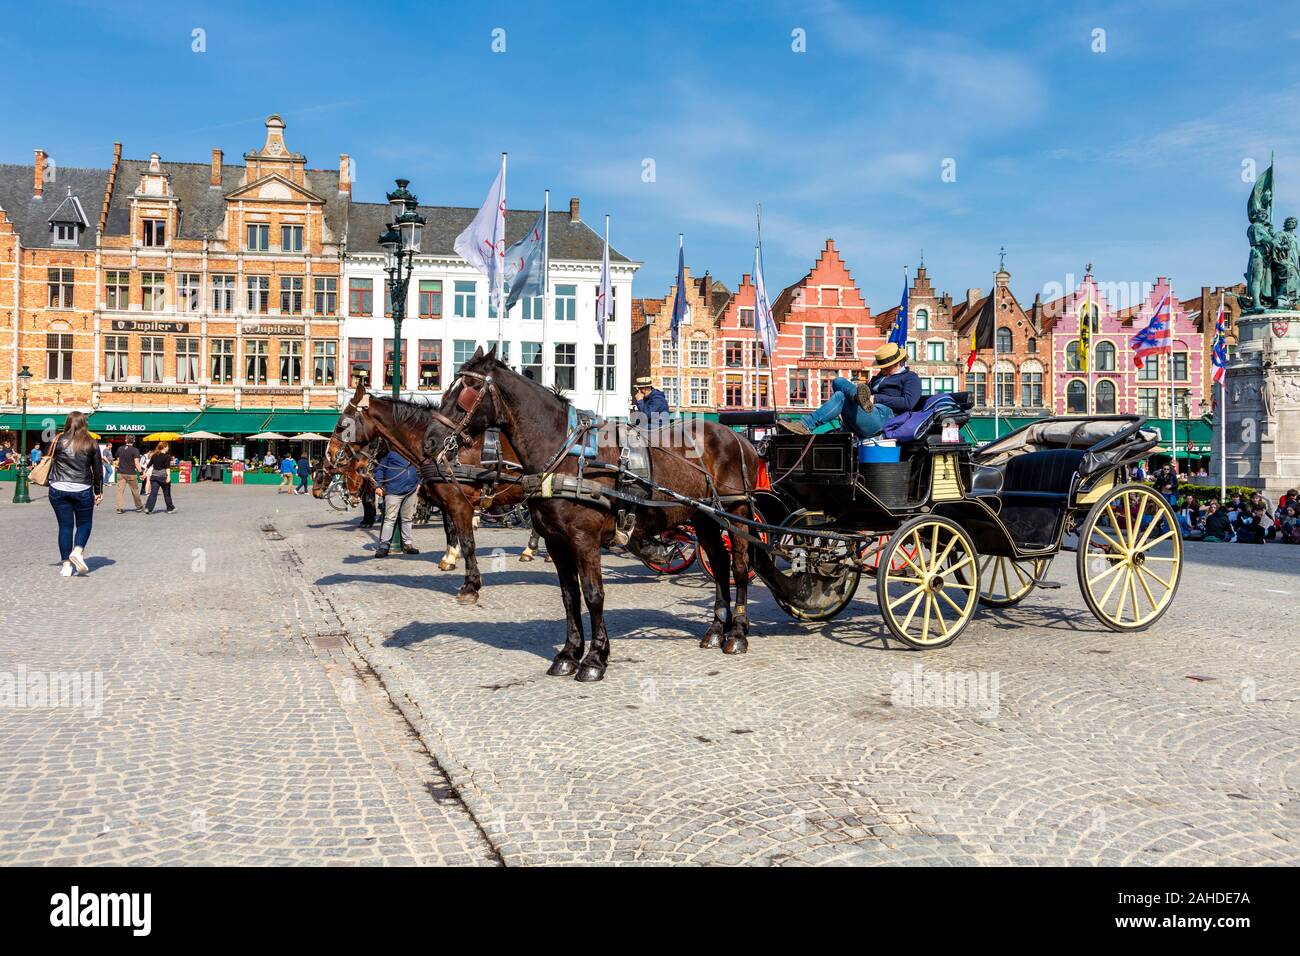 Pferdekutschen auf dem Marktplatz (Markt) in Brügge, Belgien Stockfoto